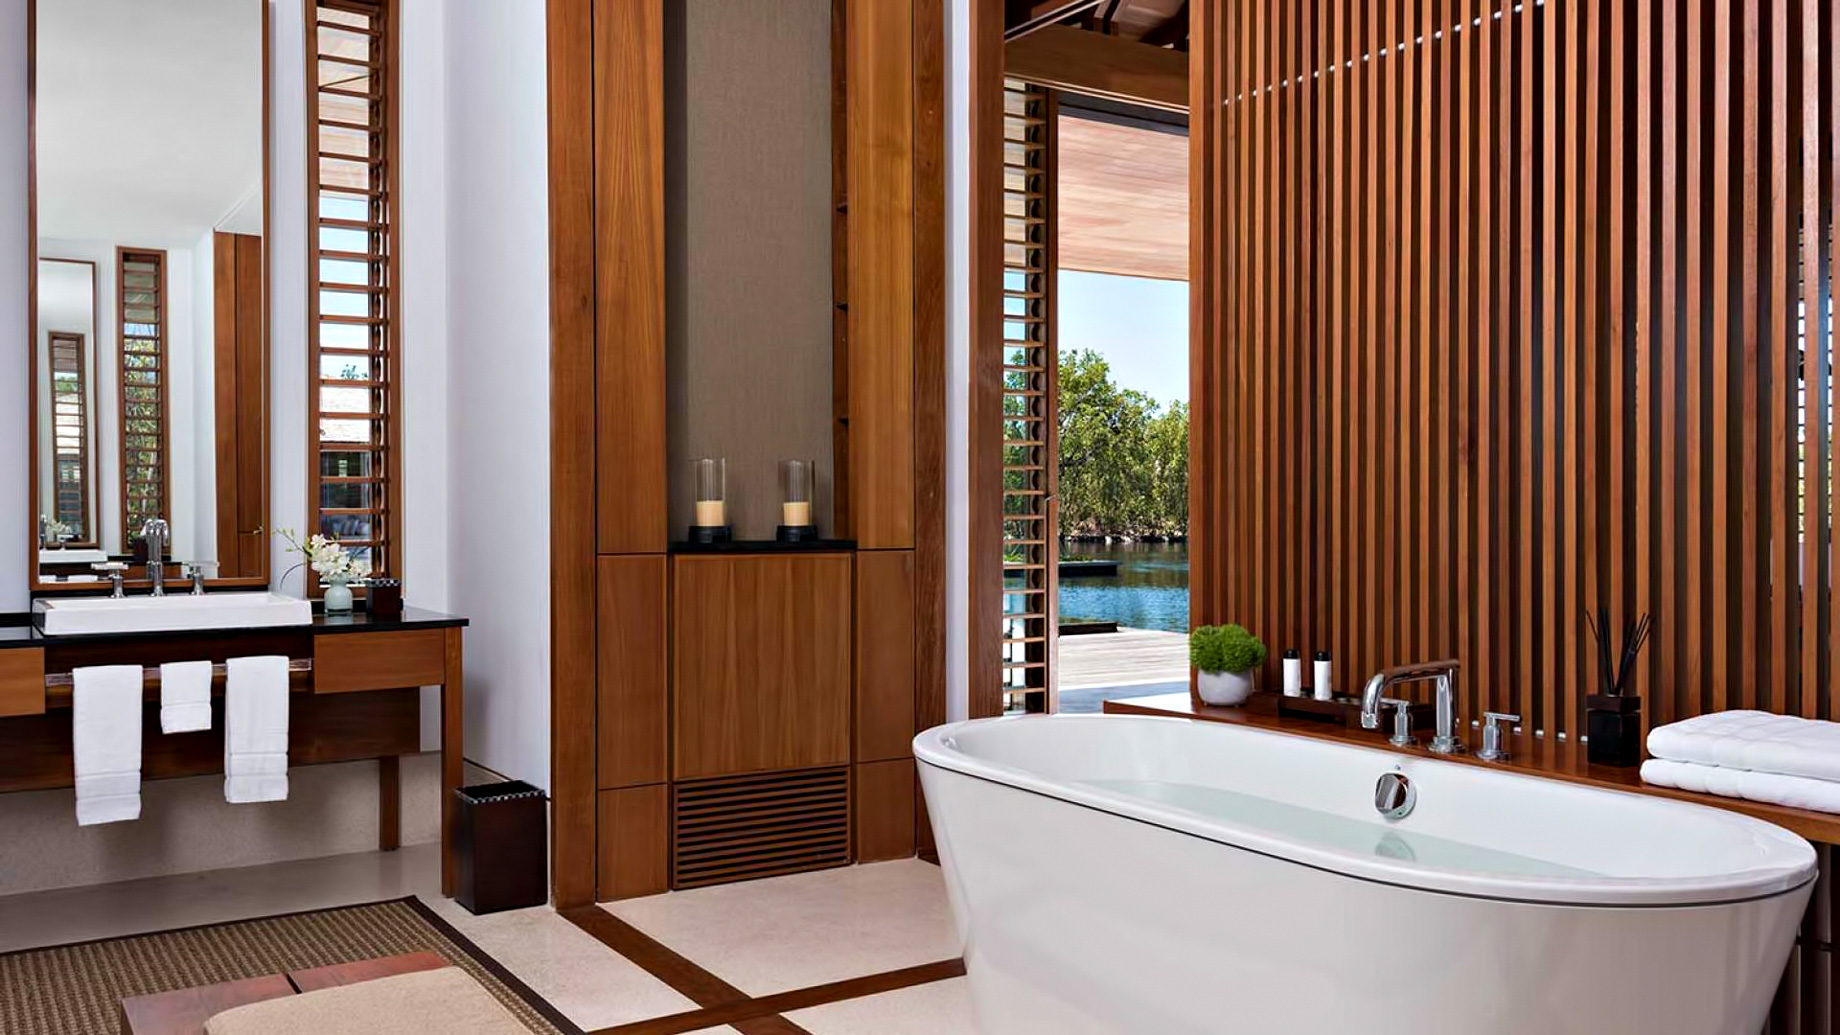 Amanyara Resort – Providenciales, Turks and Caicos Islands – 6 Bedroom Amanyara Villa Bathroom